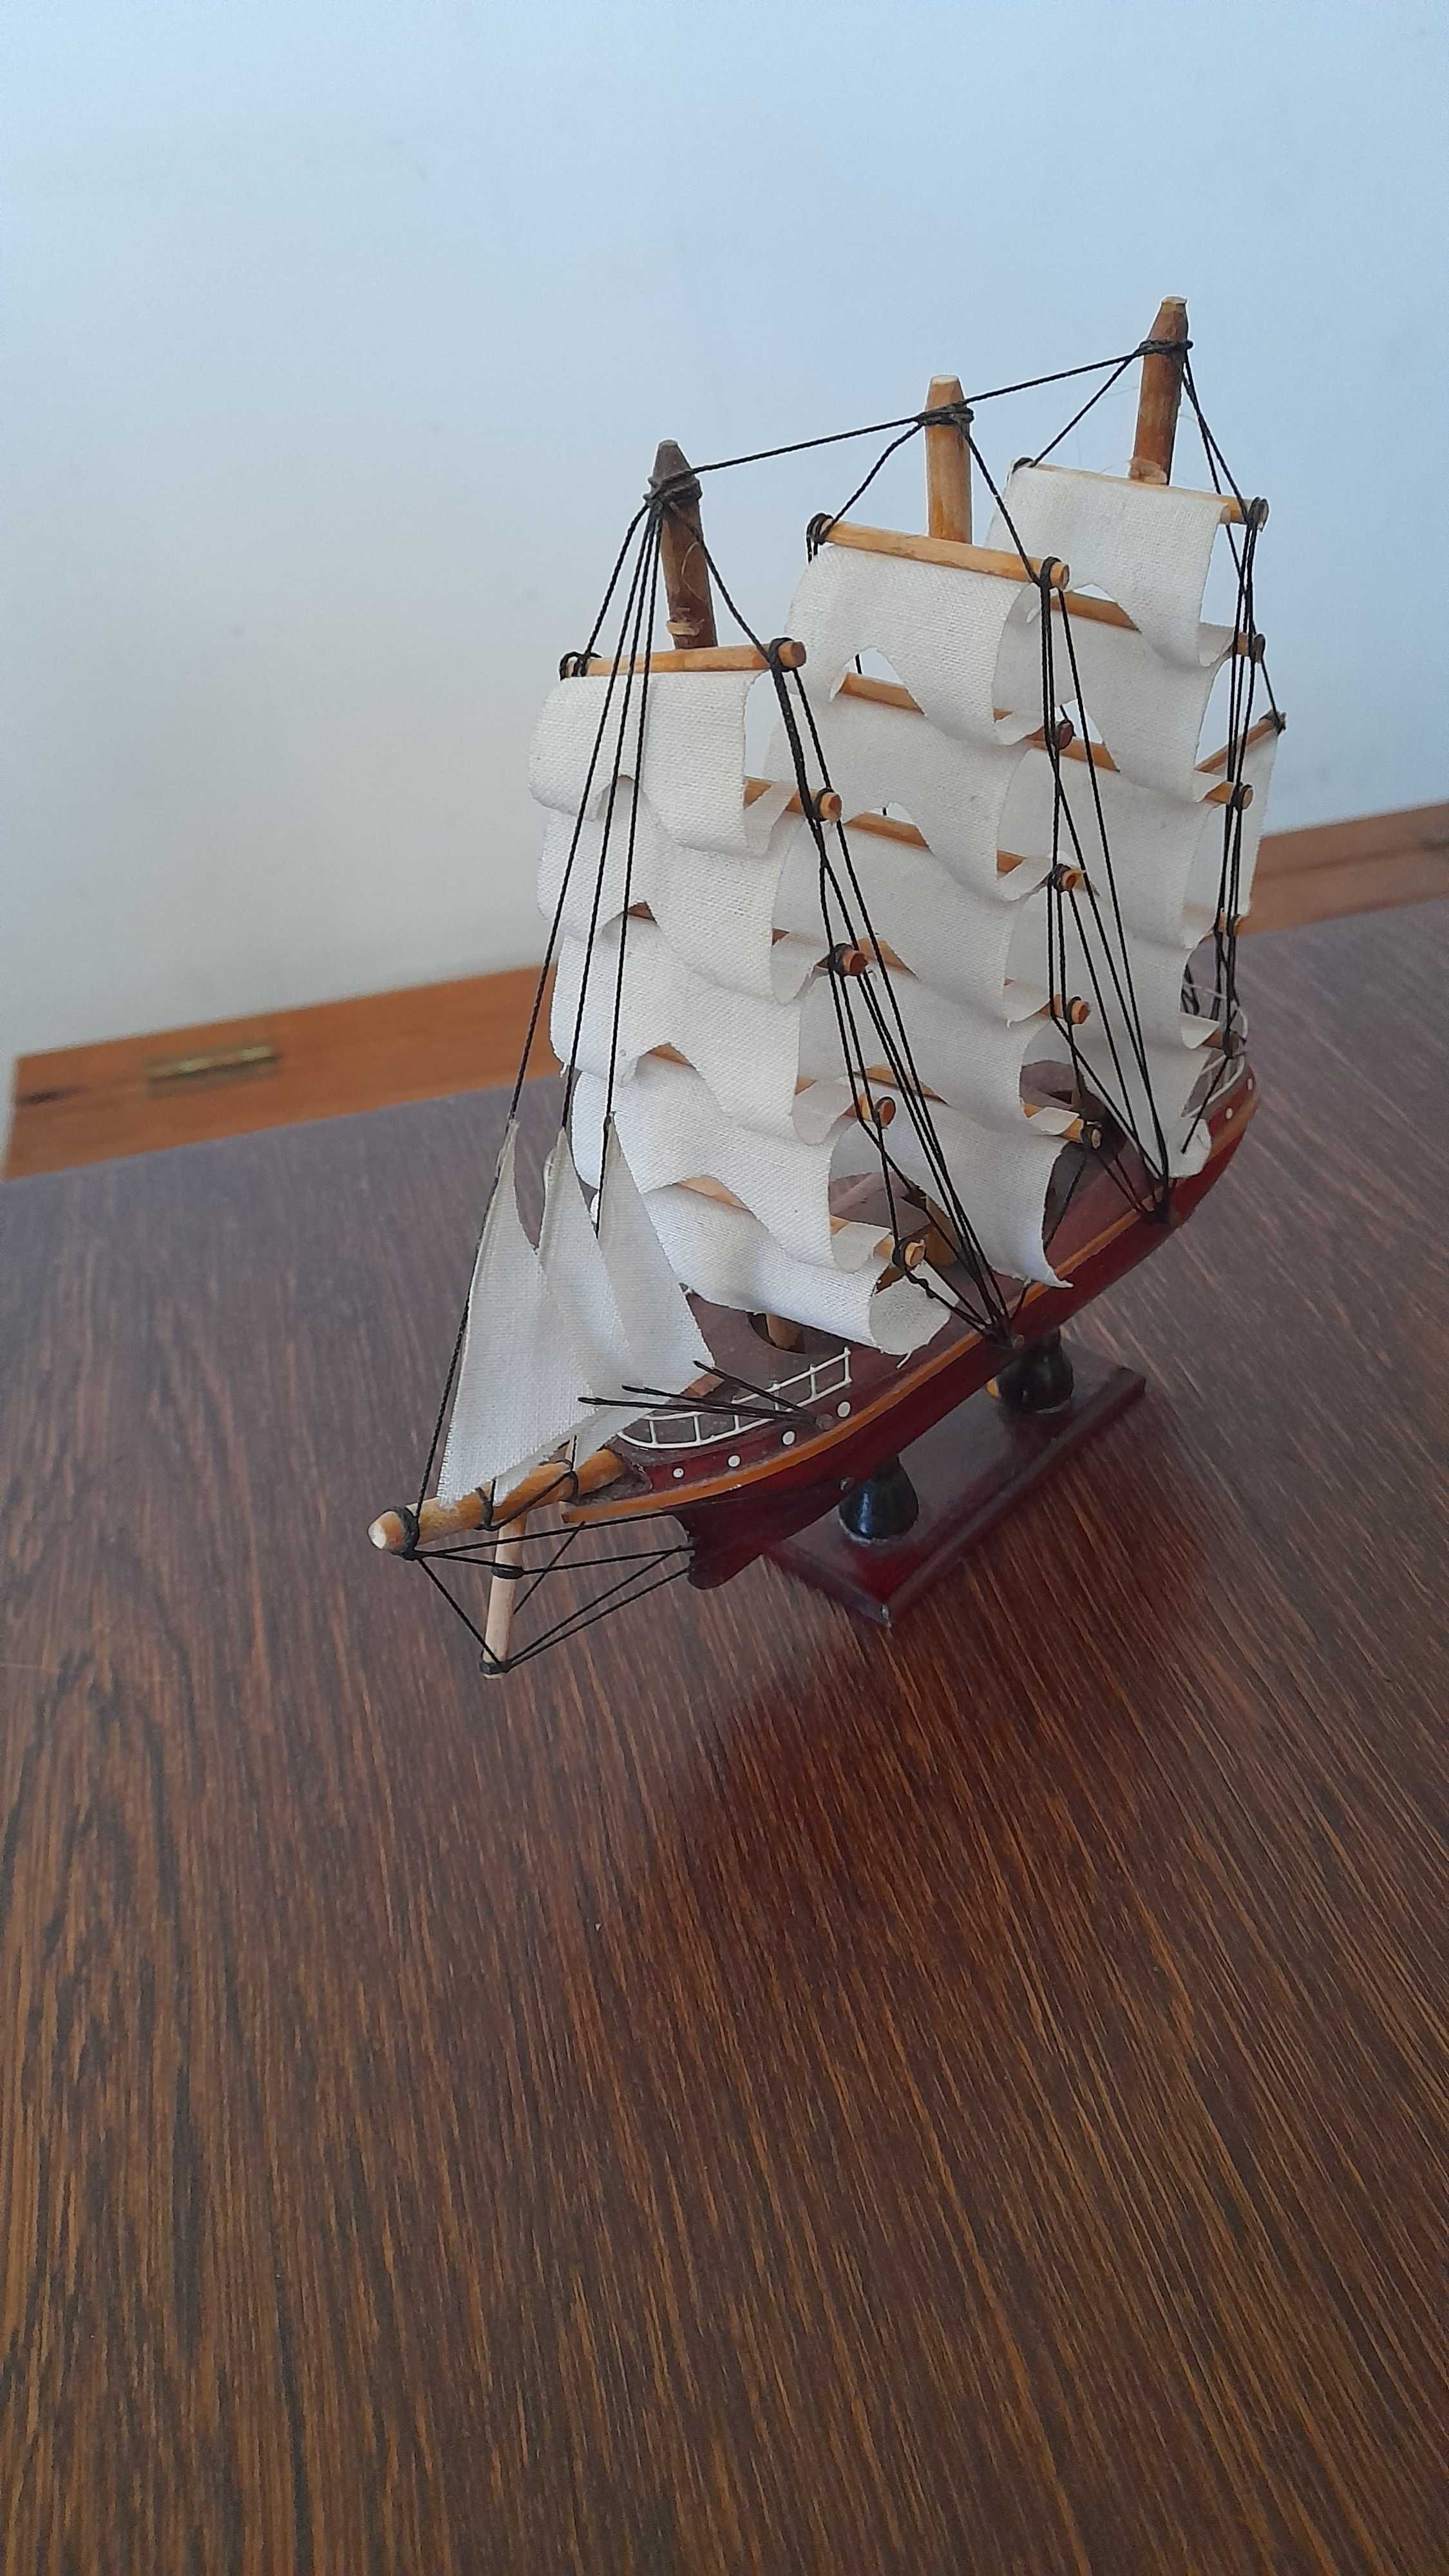 Drewniany model statku